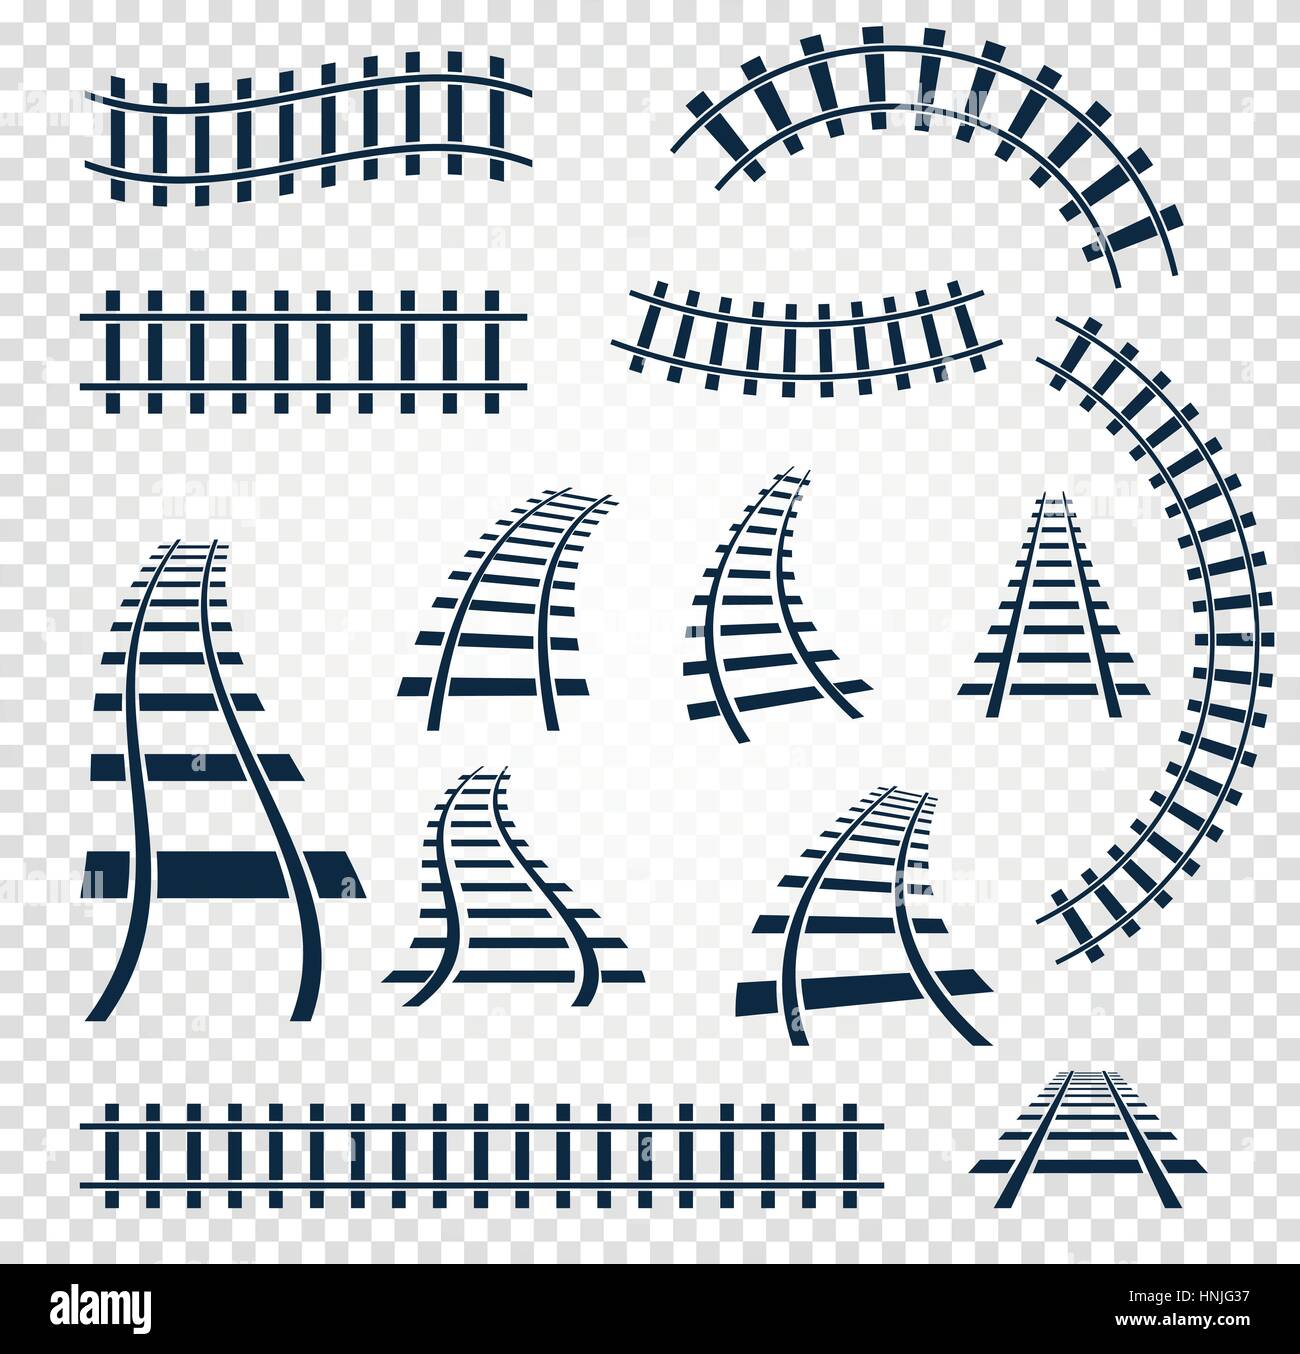 Kurvig und gerade Schienen Set, Bahn Draufsicht Sammlung isoliert Leiter Elemente Vektor-Illustrationen auf weißem Hintergrund. Stock Vektor